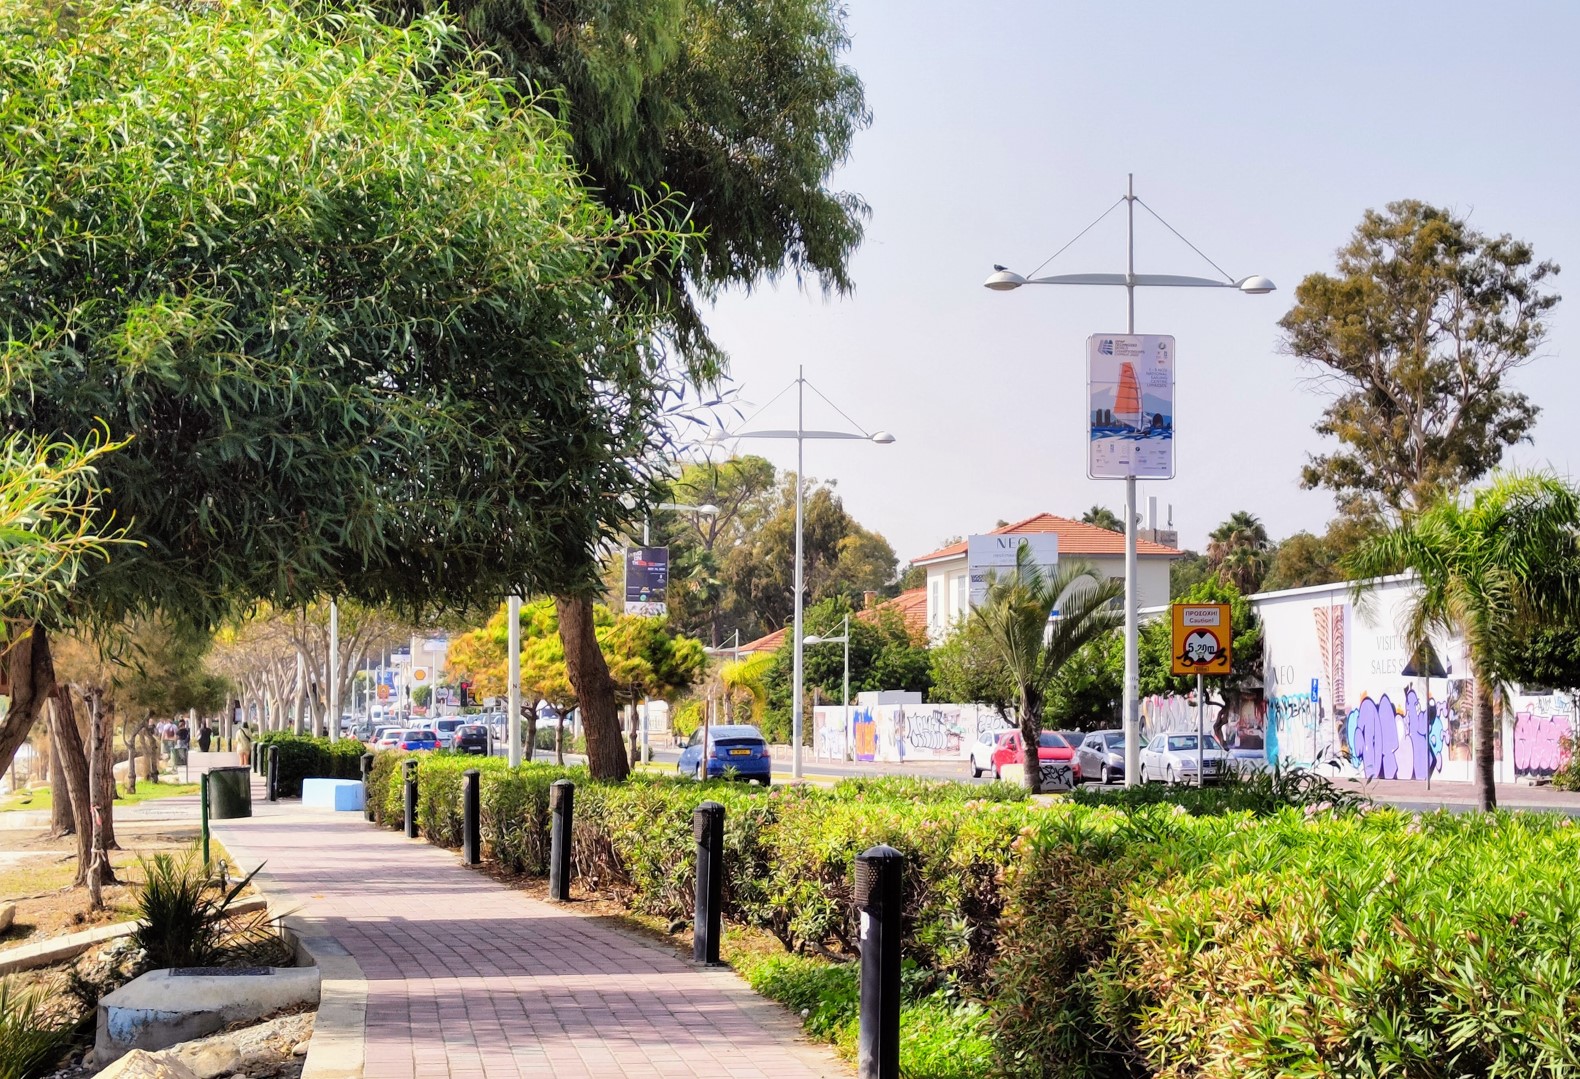 28 October Avenue - a coastal road in Limassol, Cyprus